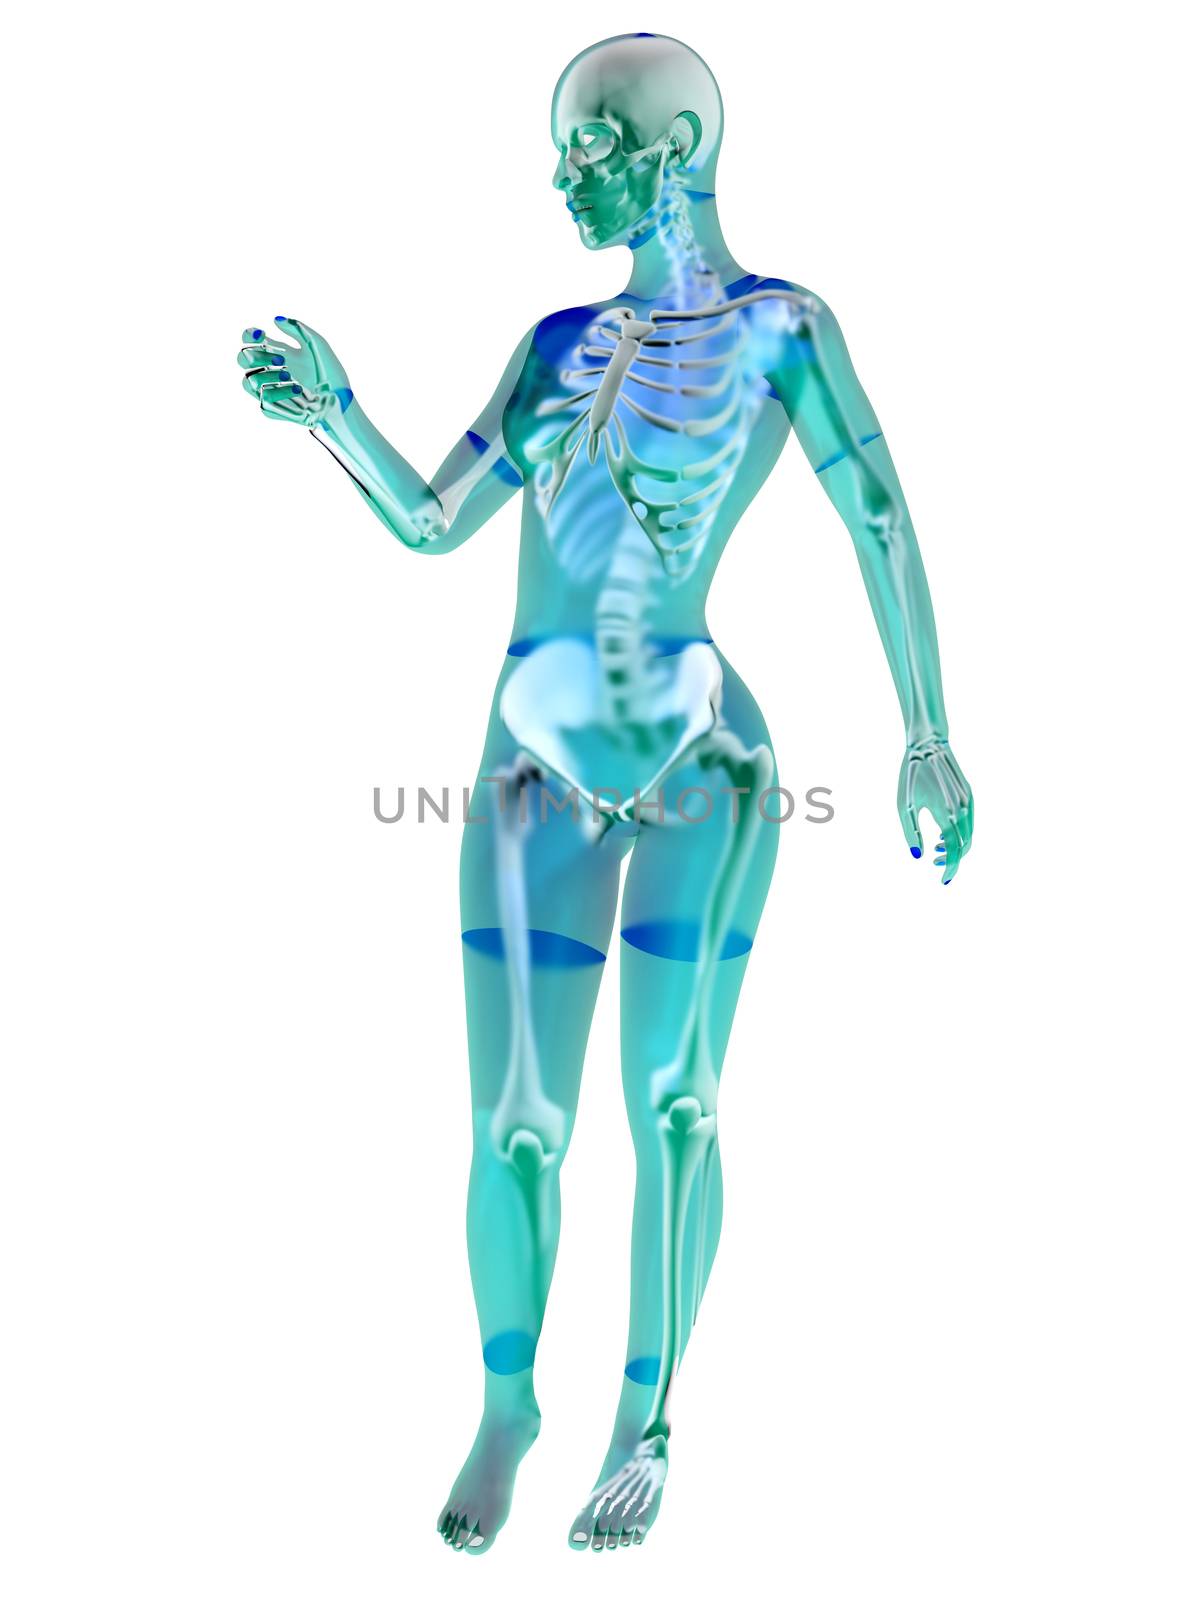 Female anatomy visualization. 3D Illustration isolated on white.